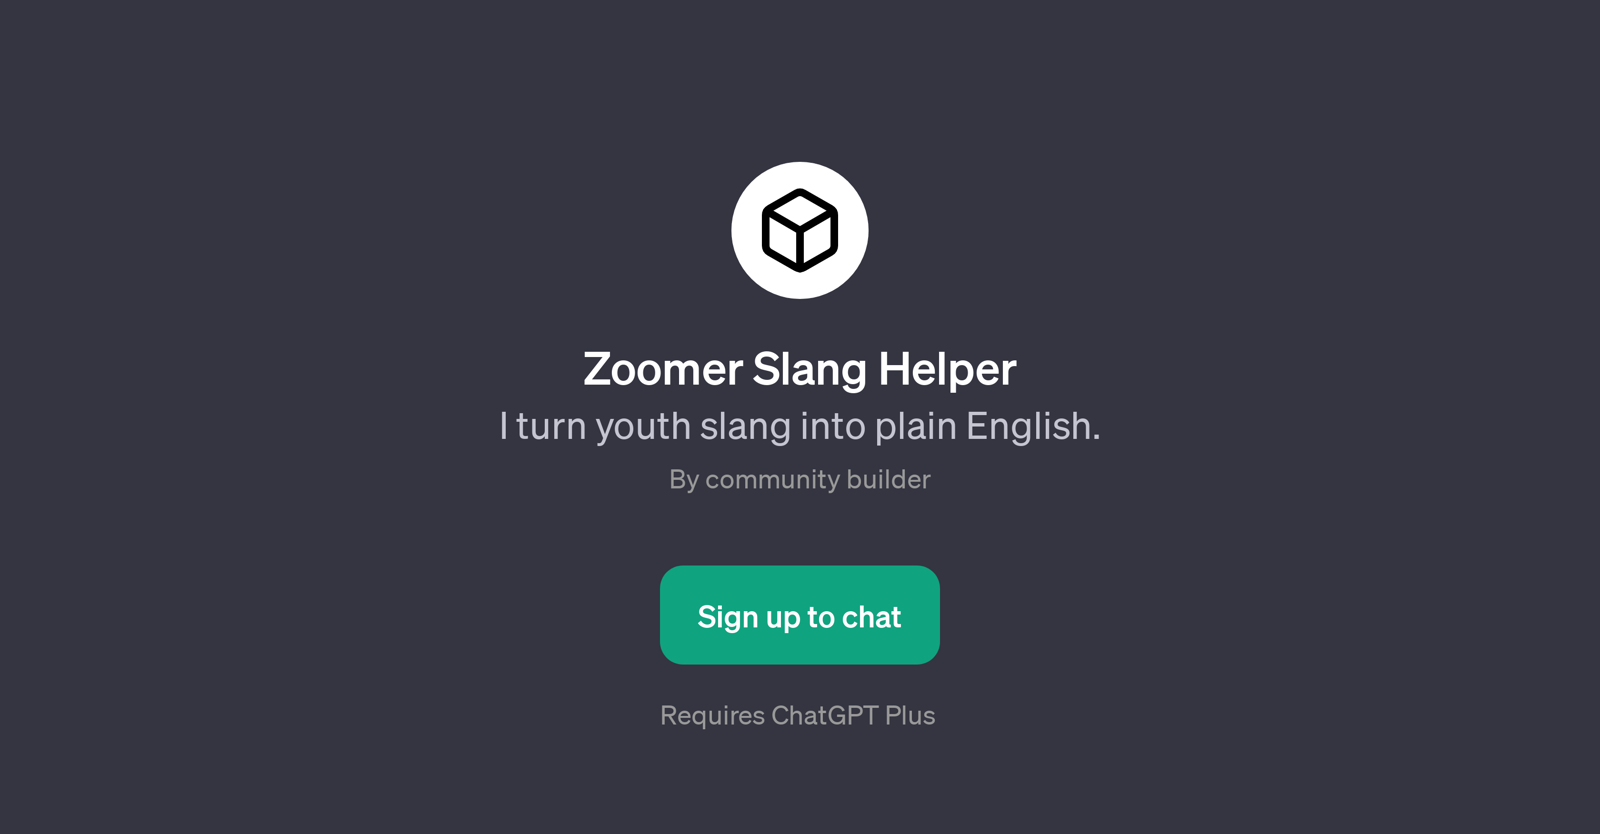 Zoomer Slang Helper website